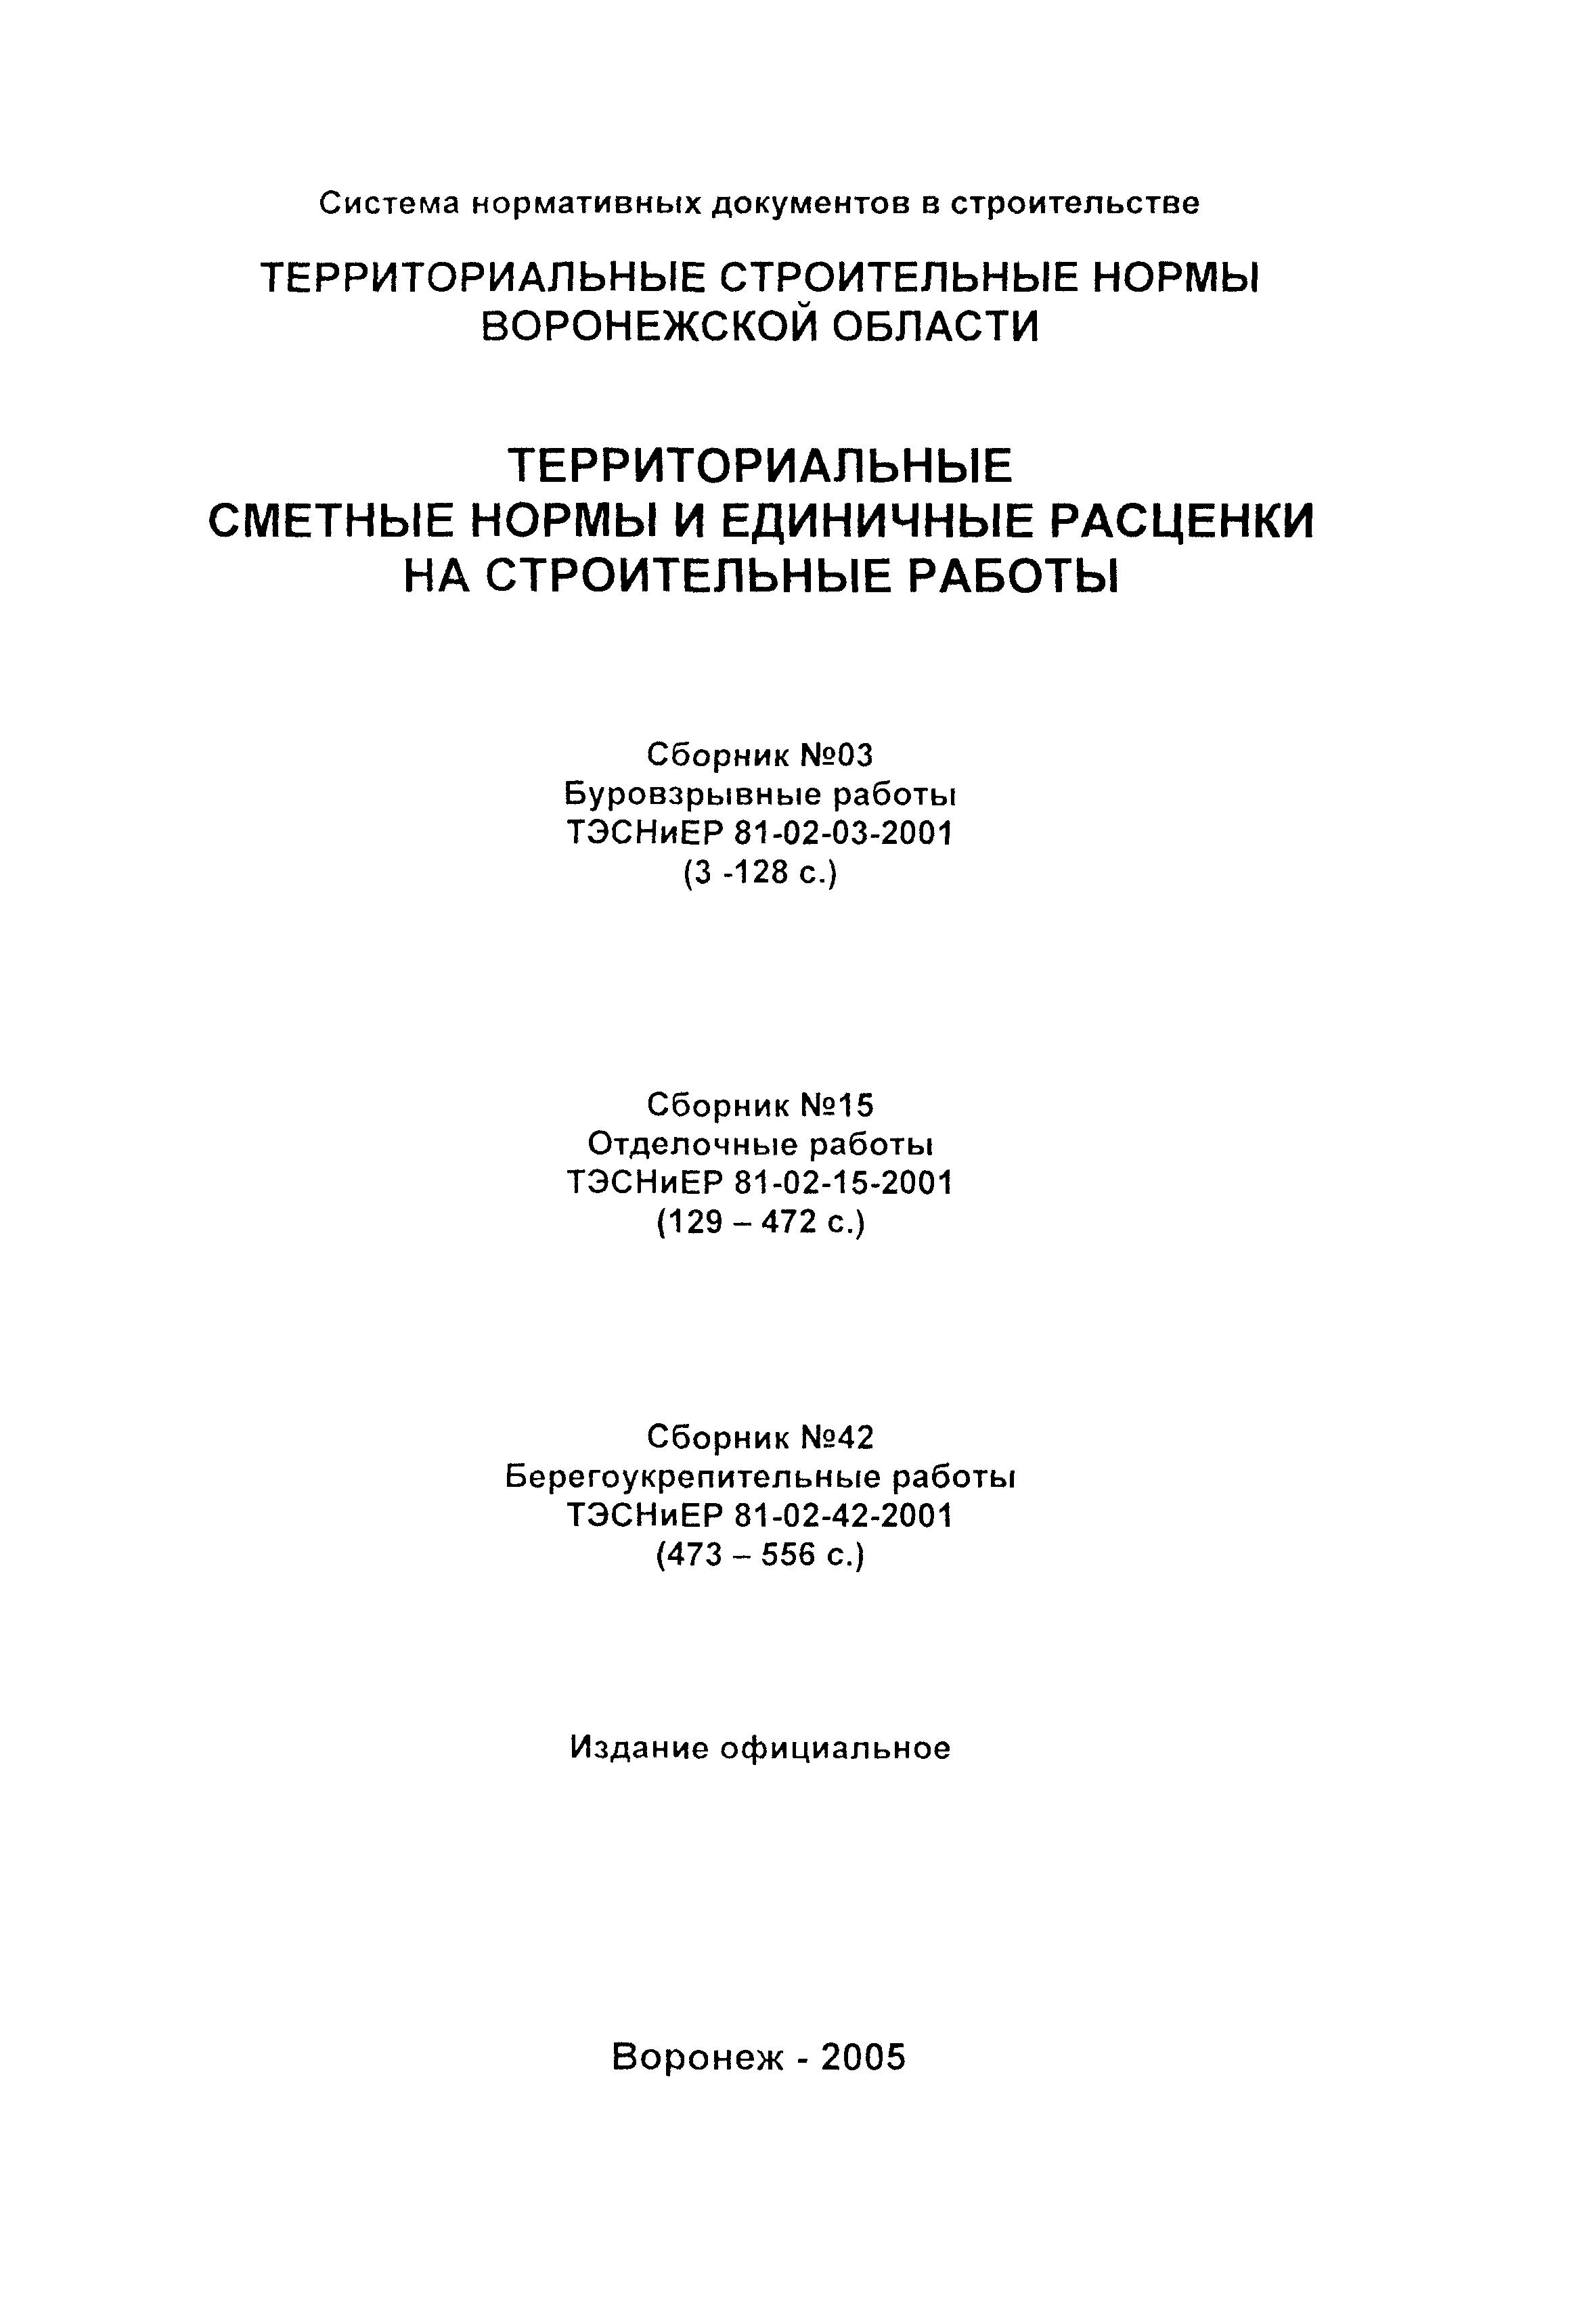 ТЭСНиЕР Воронежской области 81-02-03-2001